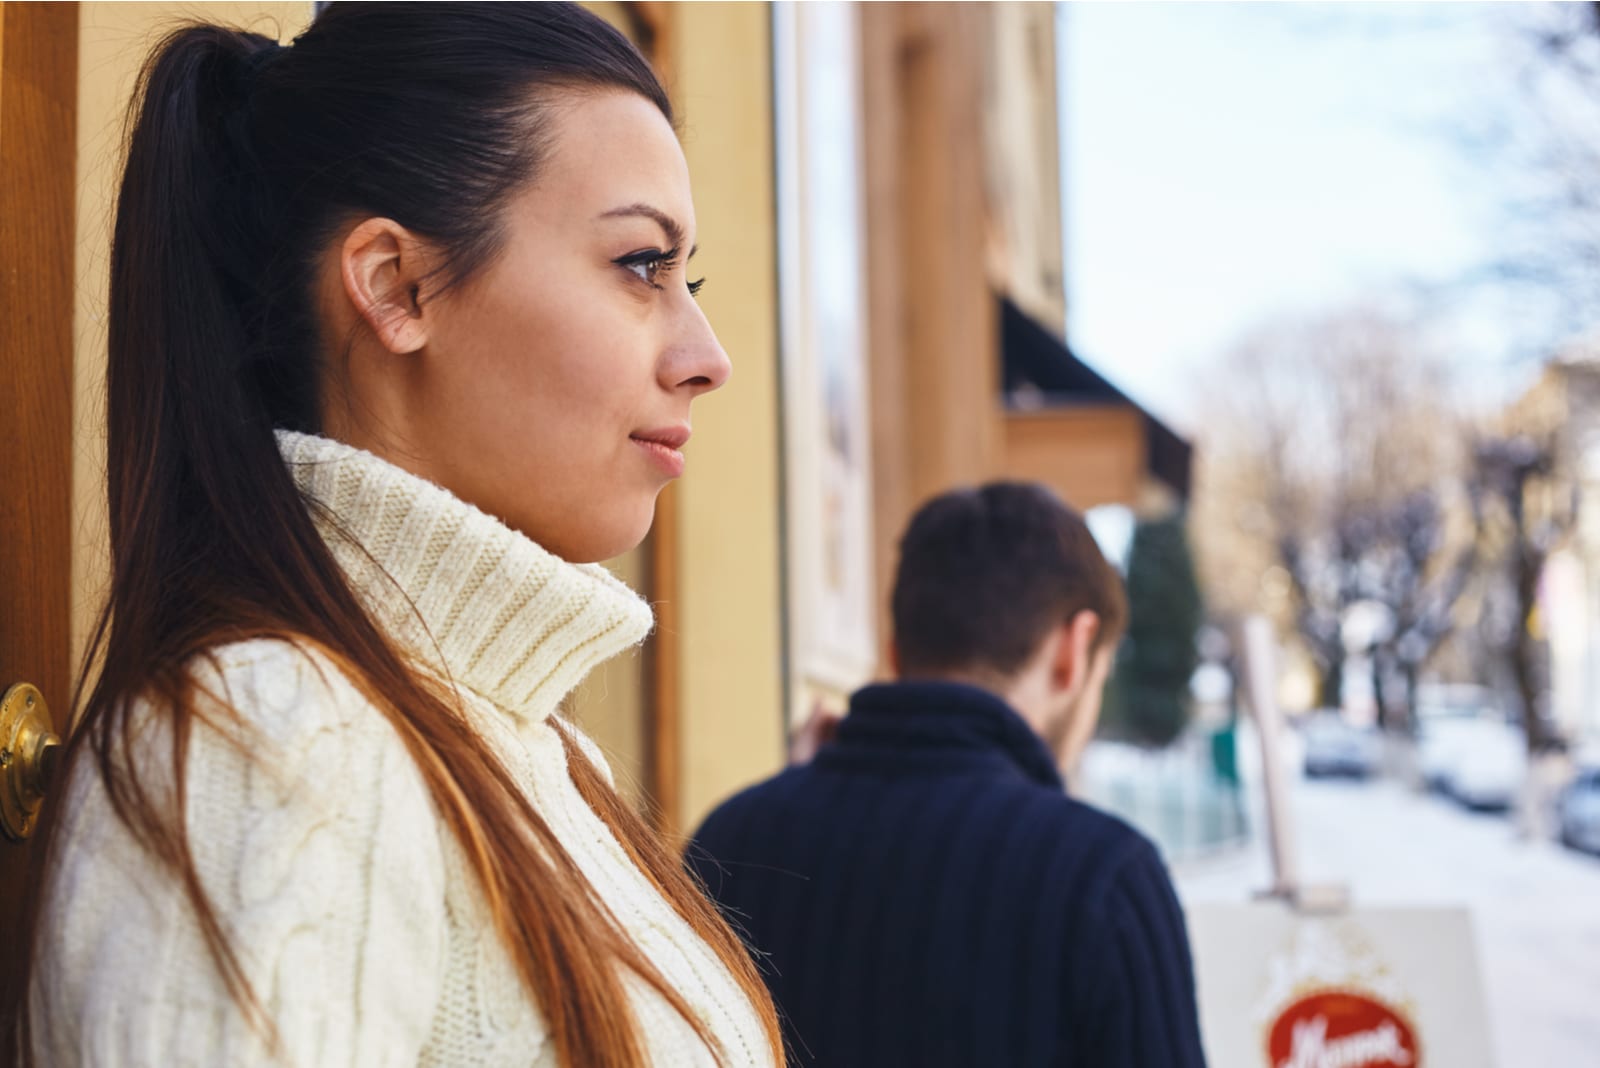 Immagine di una ragazza, in piedi fuori dal caffè, con lo sguardo rivolto altrove